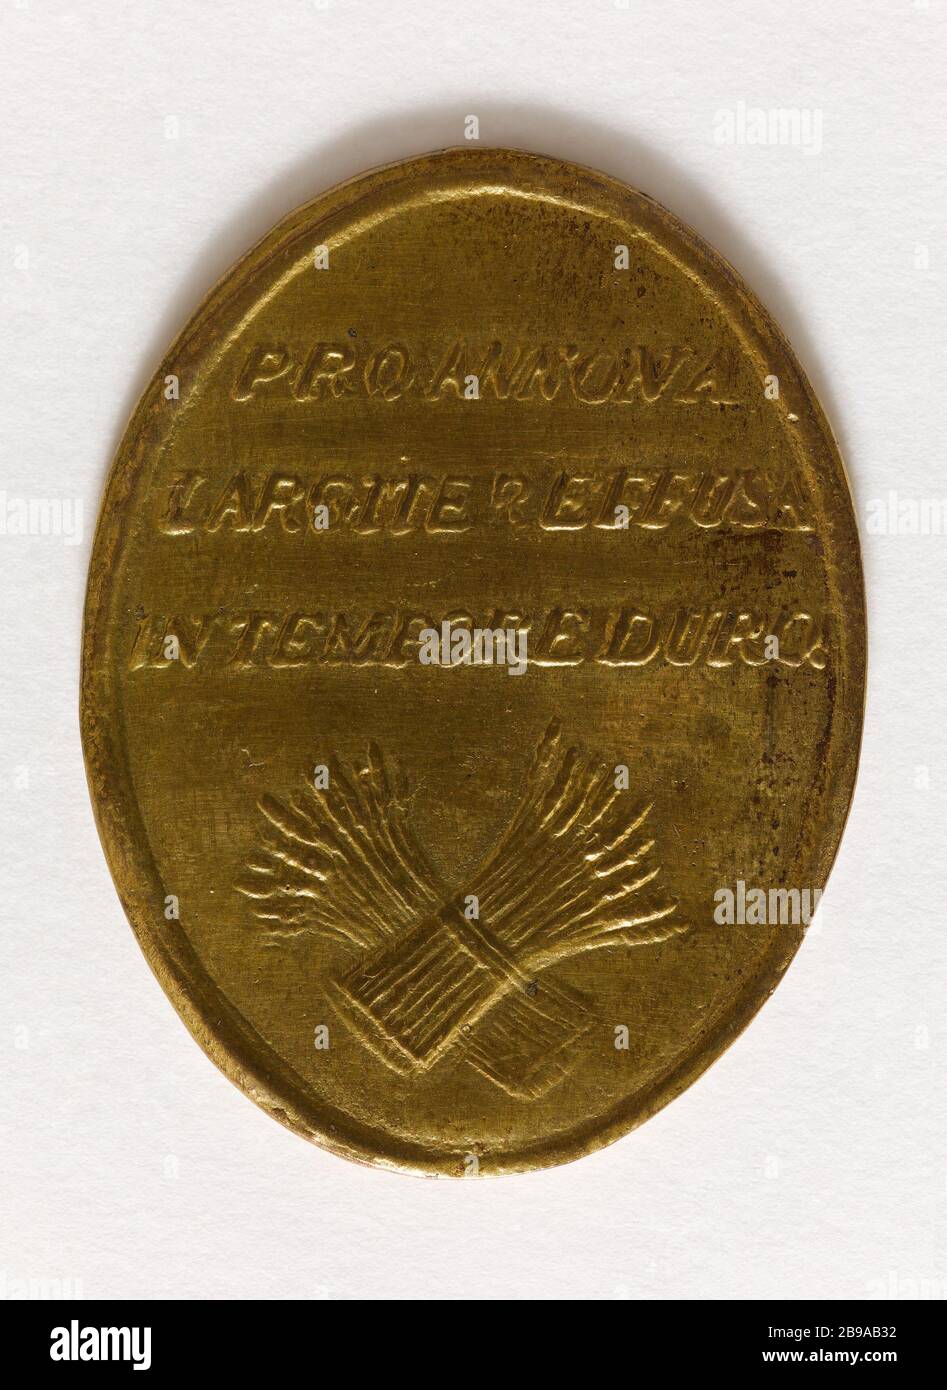 MEDAILLE DER STADT NICOLAS A MEAUX TRONCHON, INHABER MARTIN EINE LÜCKE IN ANERKENNUNG DER VON IHM ANGEBOTENEN GETREIDEERLEICHTERUNGEN ZEIT DER KNAPPHEIT, 6. NOVEMBER 1789 ANONYME. Médaille décernée par la ville de Meaux à Nicolas Tronchon, propriétaire à Fosse Martin, en reconnaissance des secours en grain offerts par lui en temps de disette, 6 novembre 1789. Cuivre doré. 1789. Paris, musée Carnavalet. Stockfoto